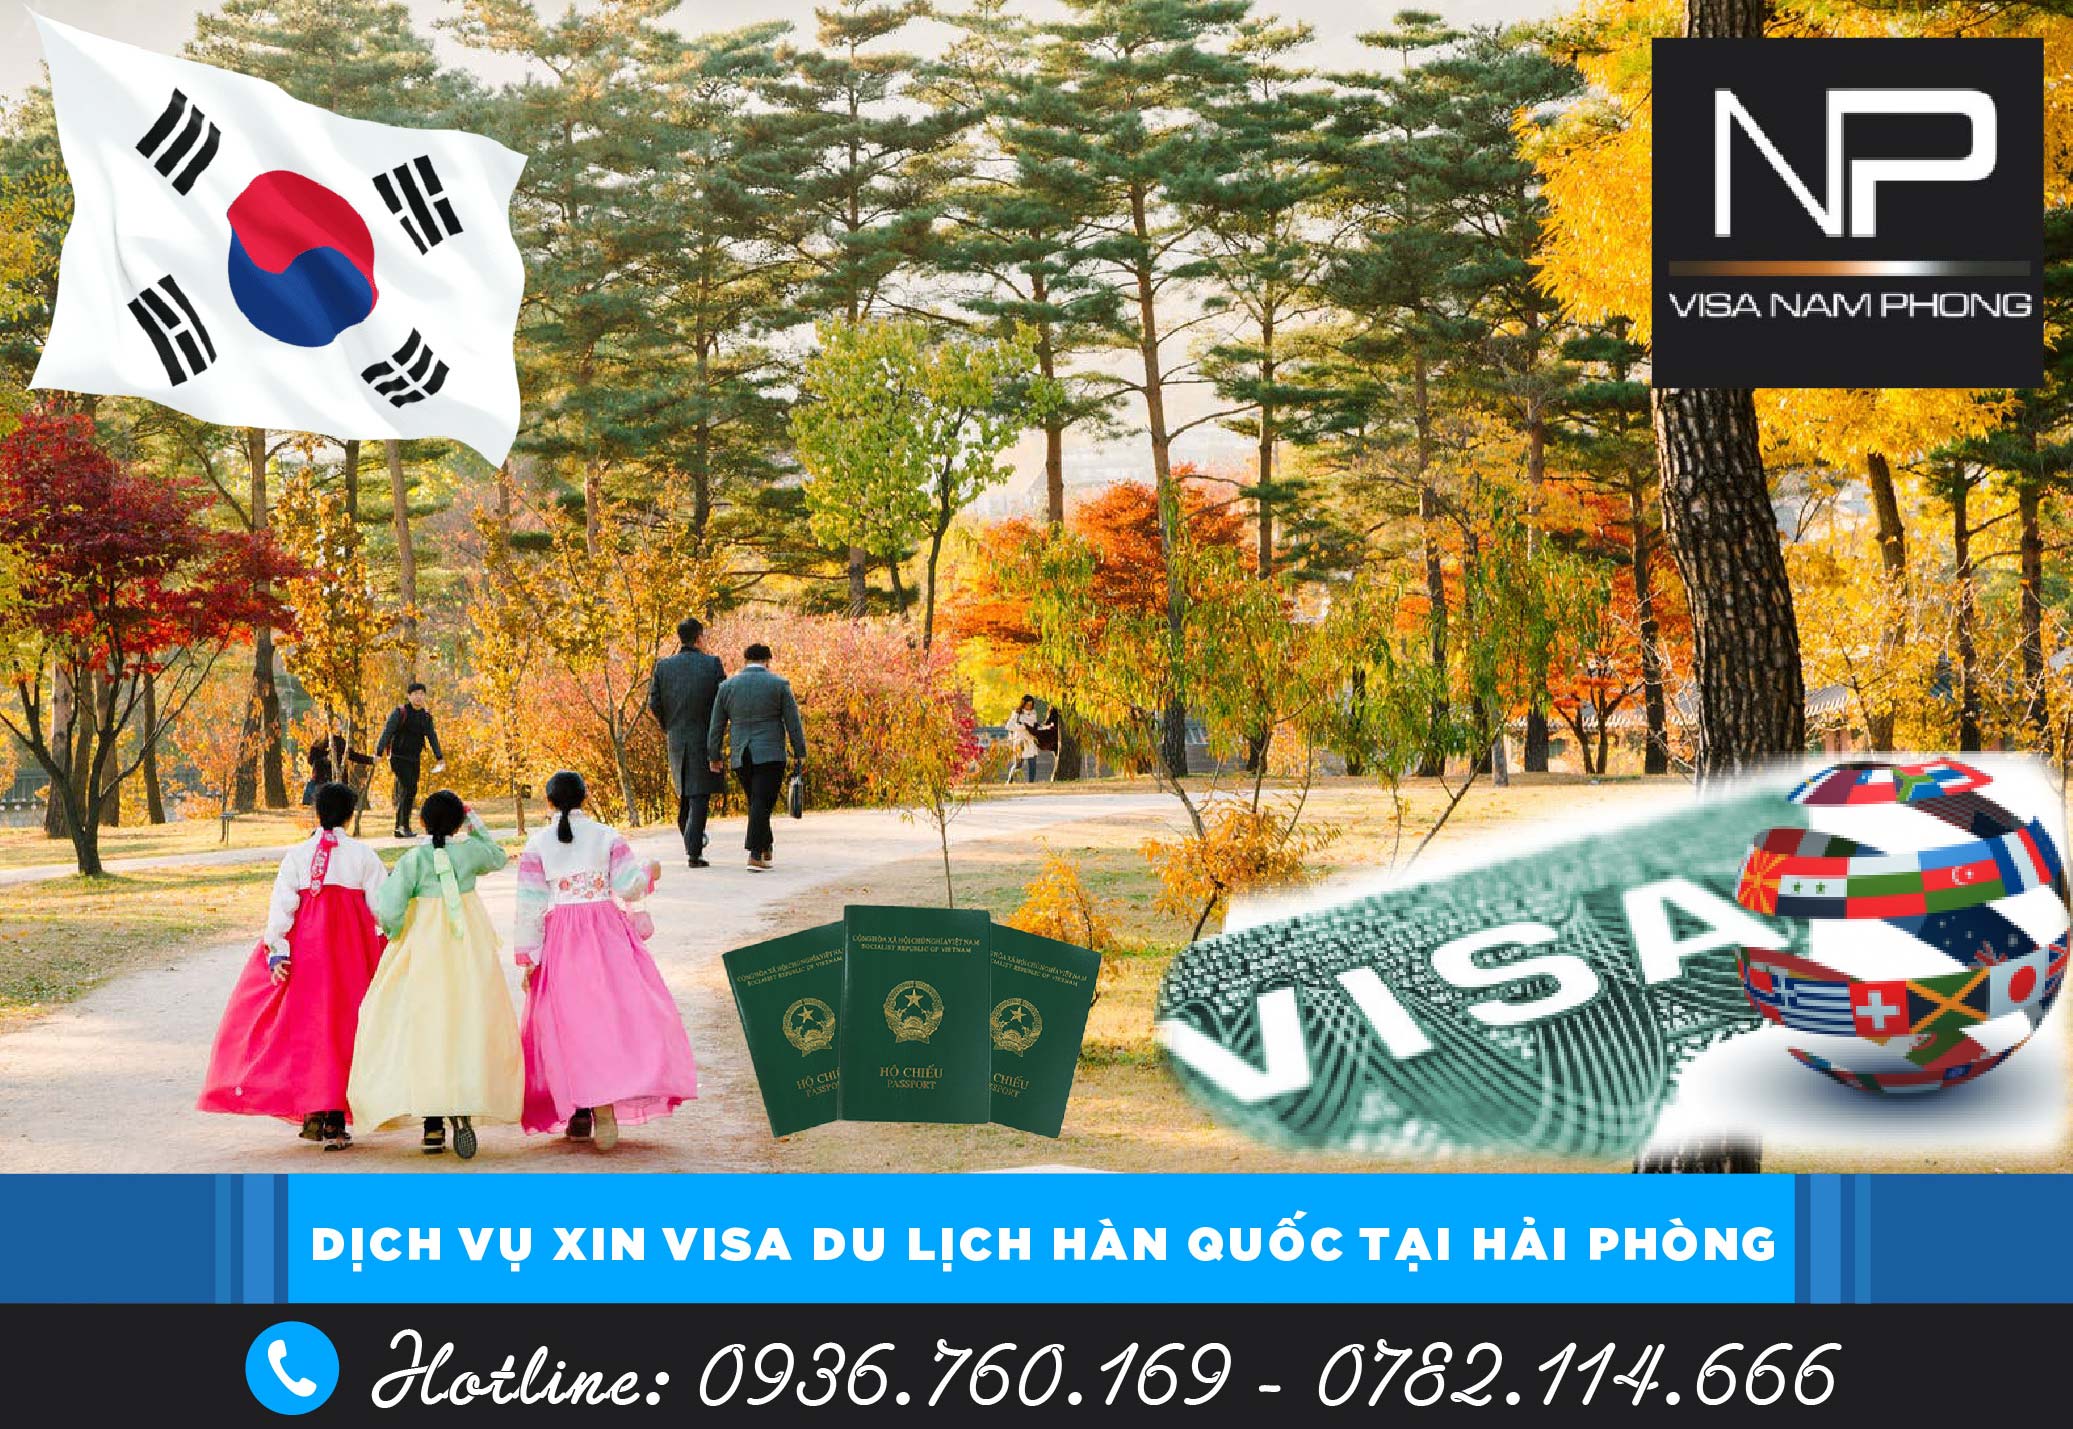 Dịch Vụ Xin Visa Du Lịch Hàn Quốc tại Hải Phòng